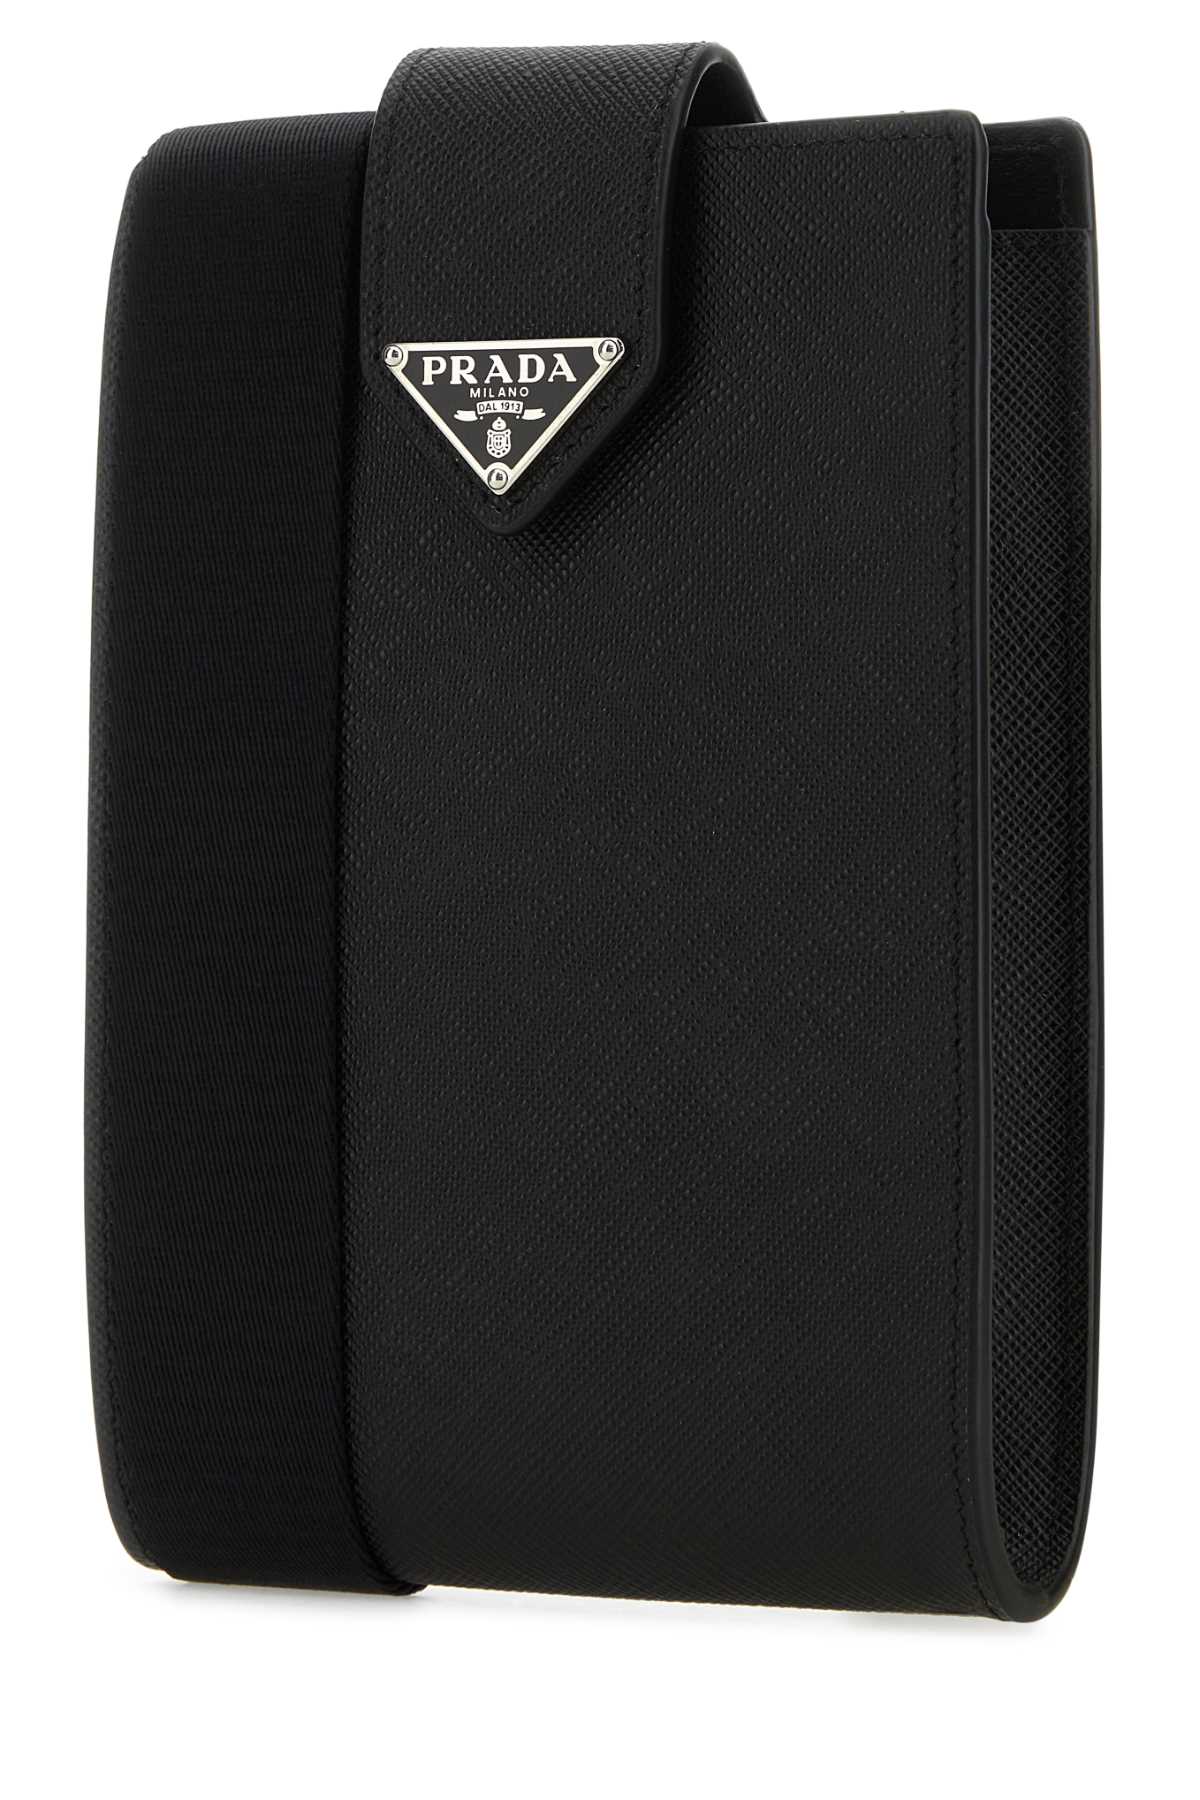 Prada Black Leather Phone Case In Nero